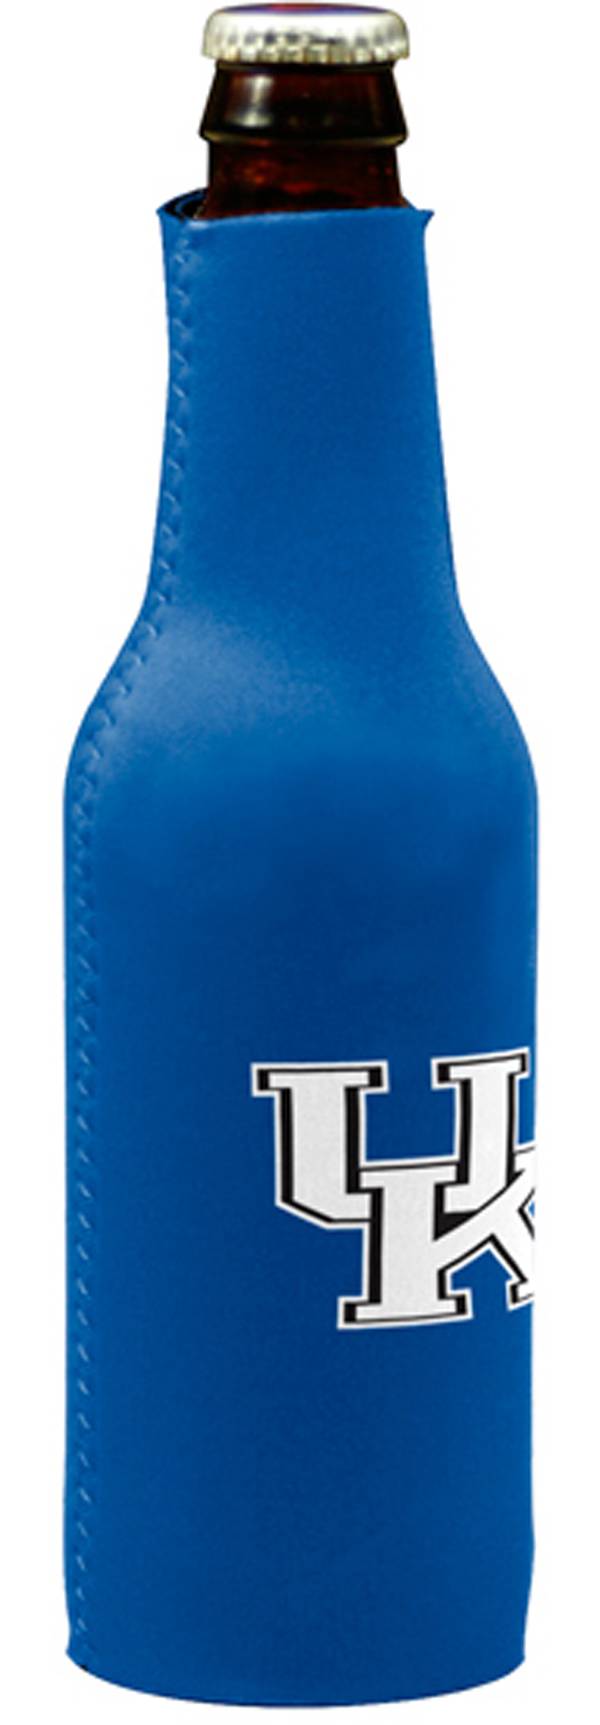 Kentucky Wildcats Bottle Koozie product image